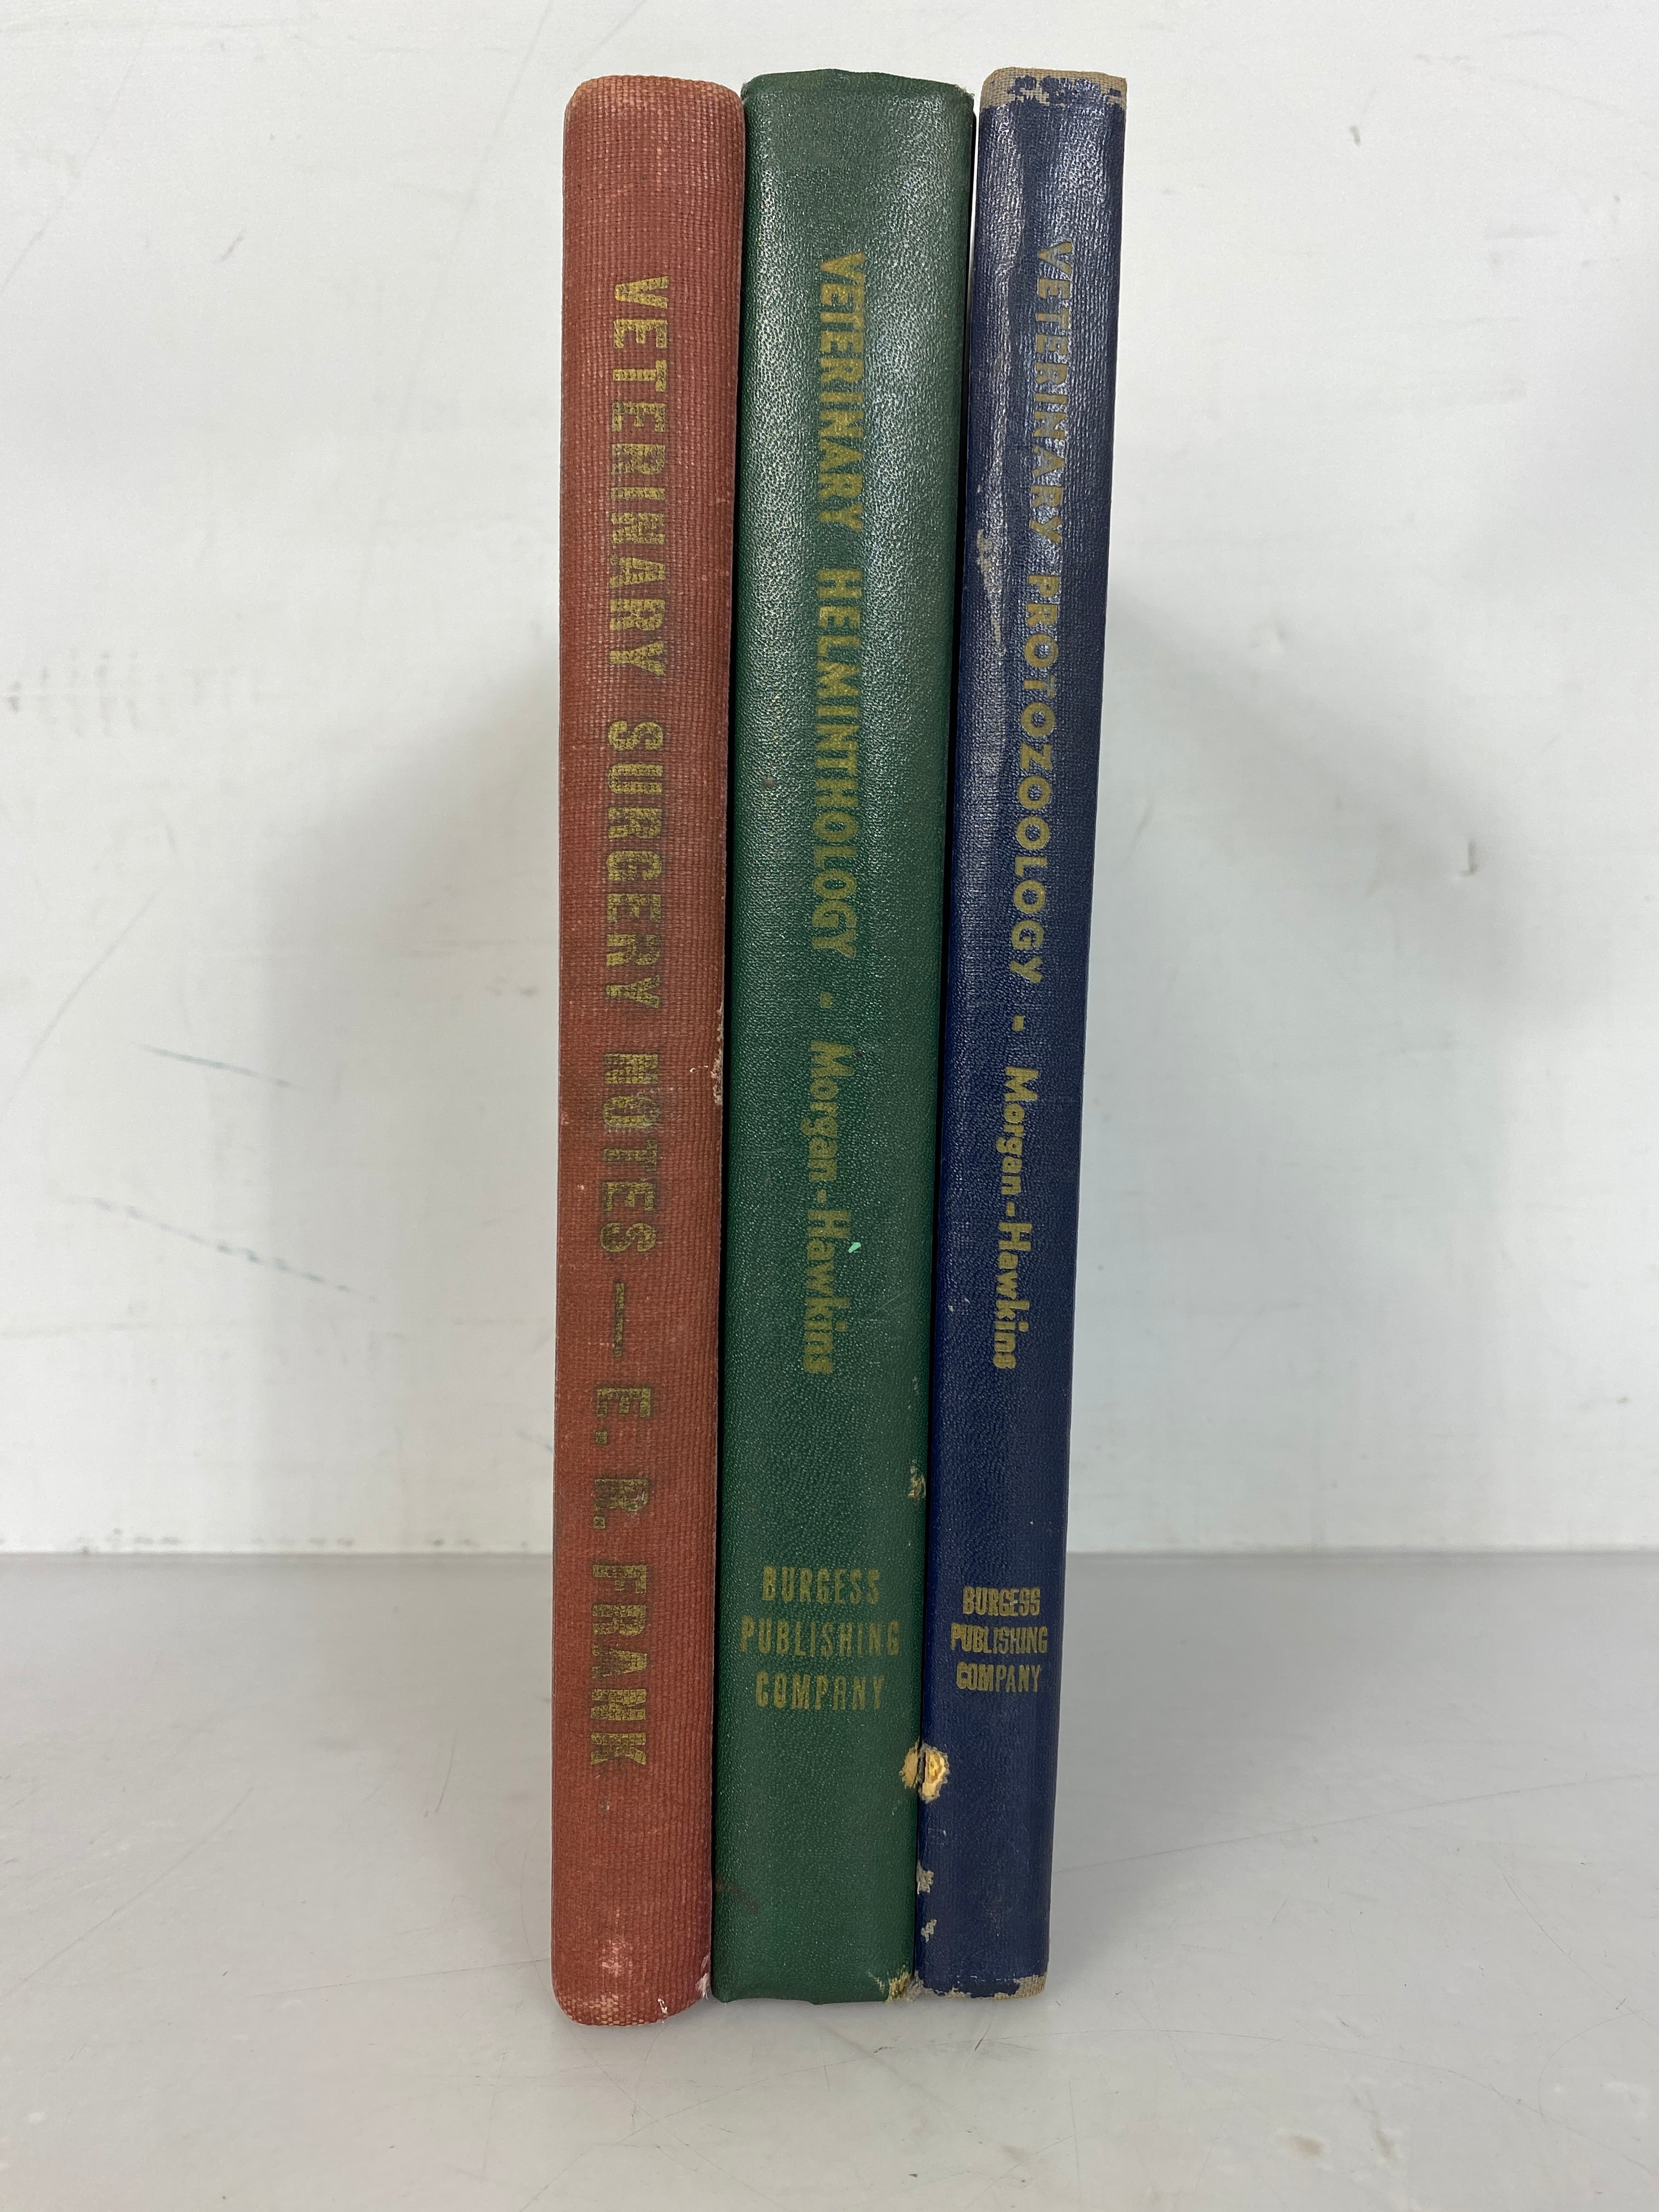 Lot of 3 Veterinary Texts: Veterinary Surgery Notes, Veterinary Protozoology, and Veterinary Helminthology (1947-1949) HC